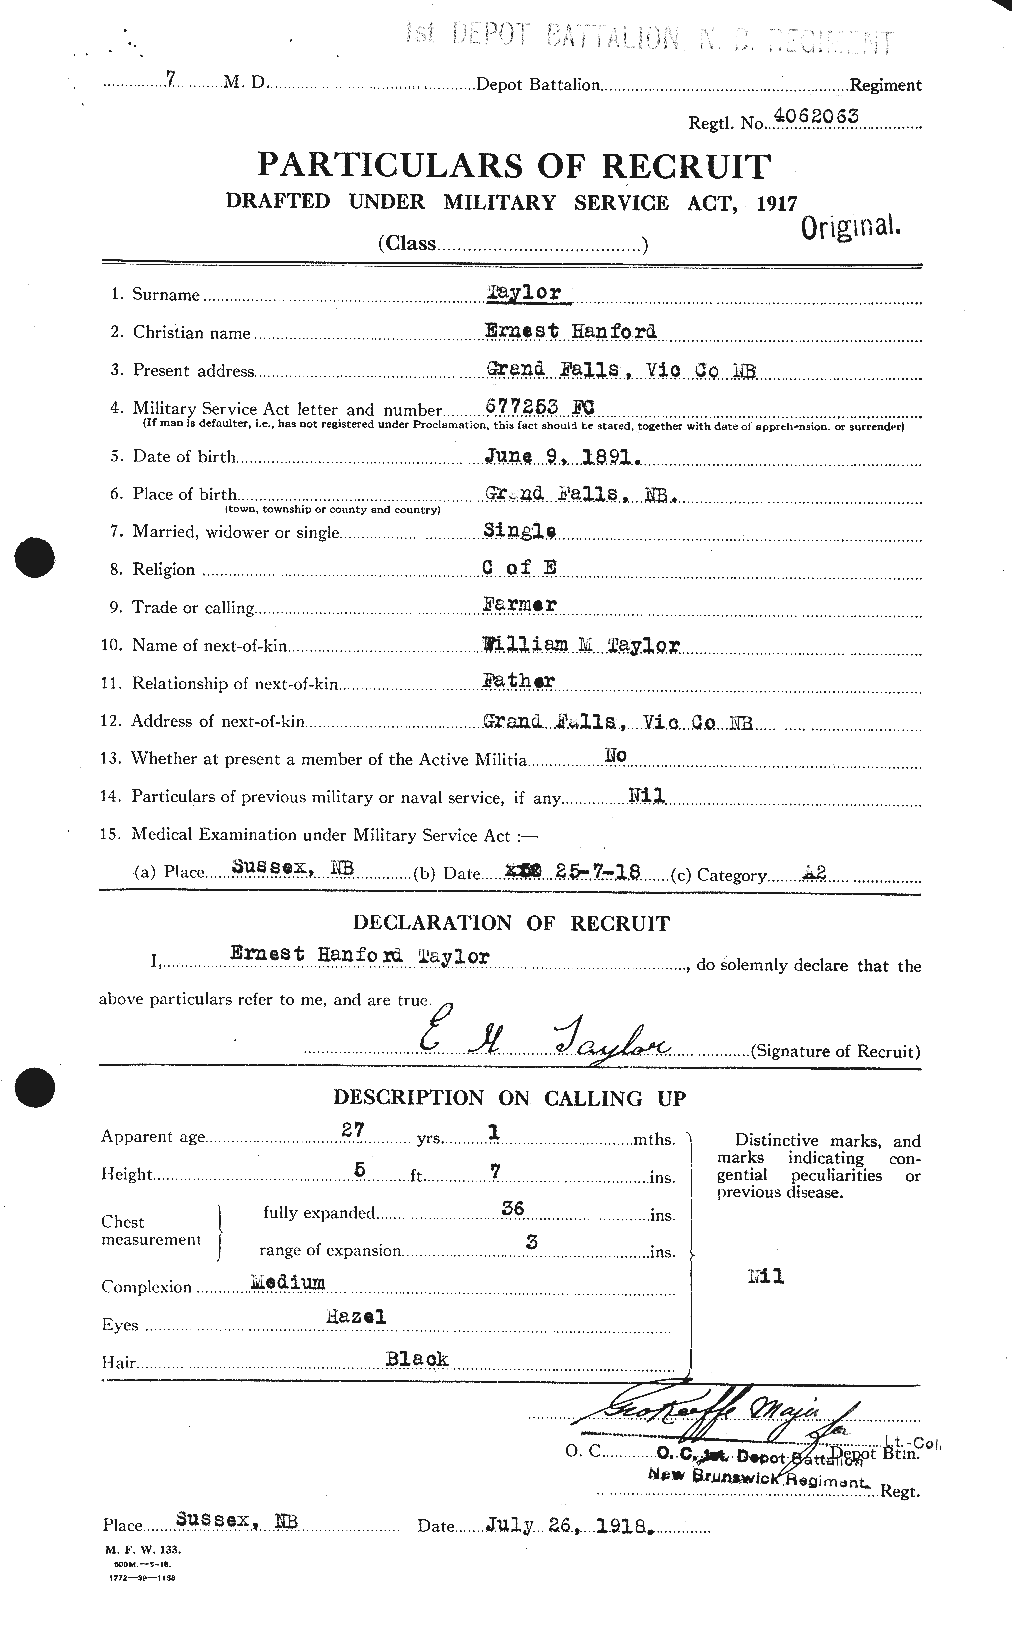 Dossiers du Personnel de la Première Guerre mondiale - CEC 627393a